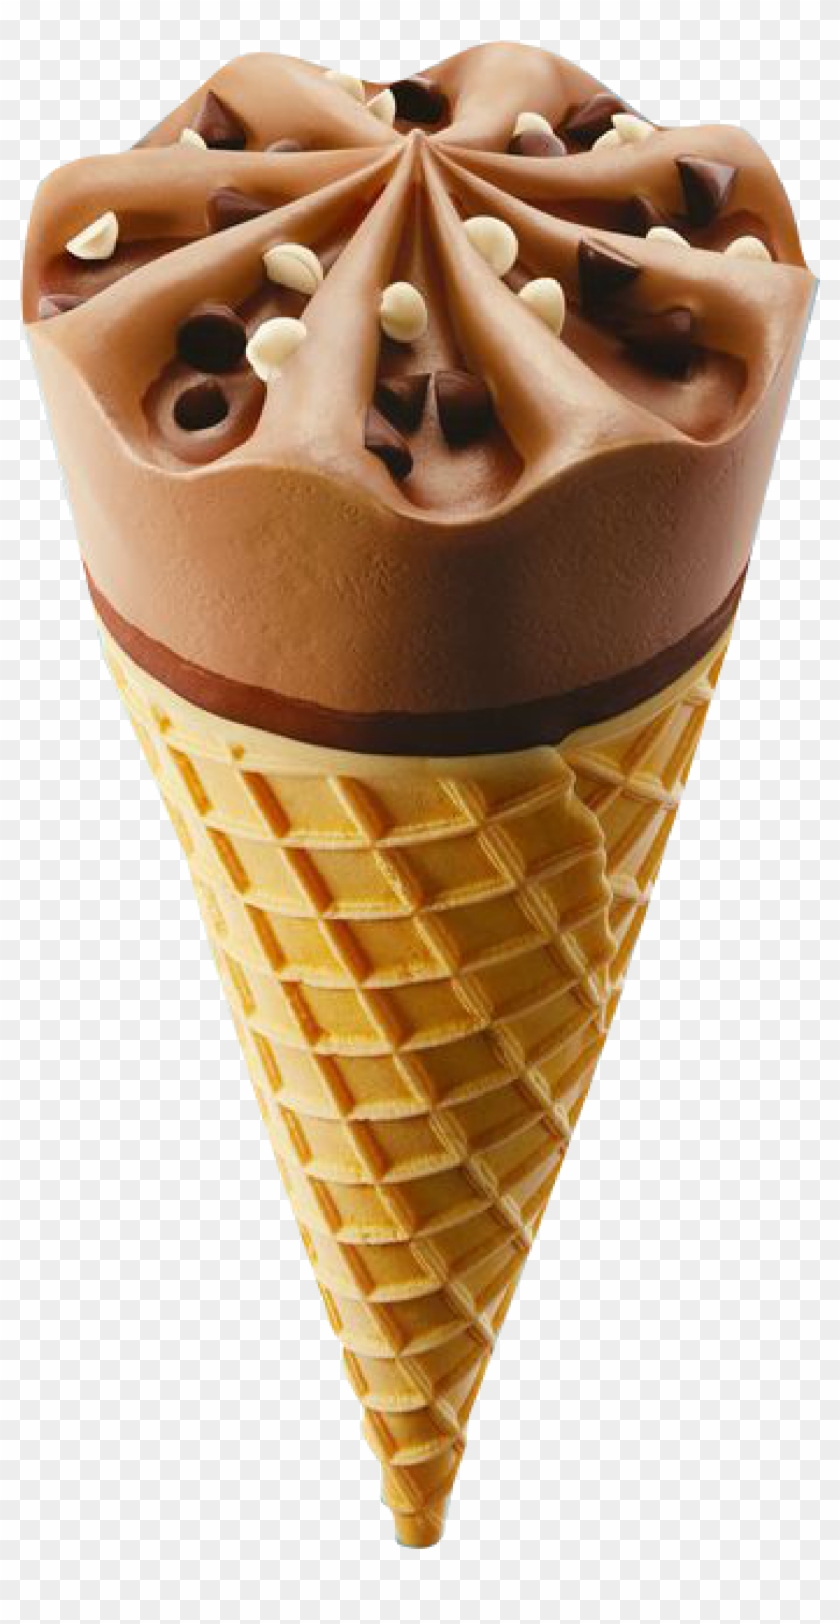 Chocolate Ice Cream Ice Cream Cone Sundae - Design #555088